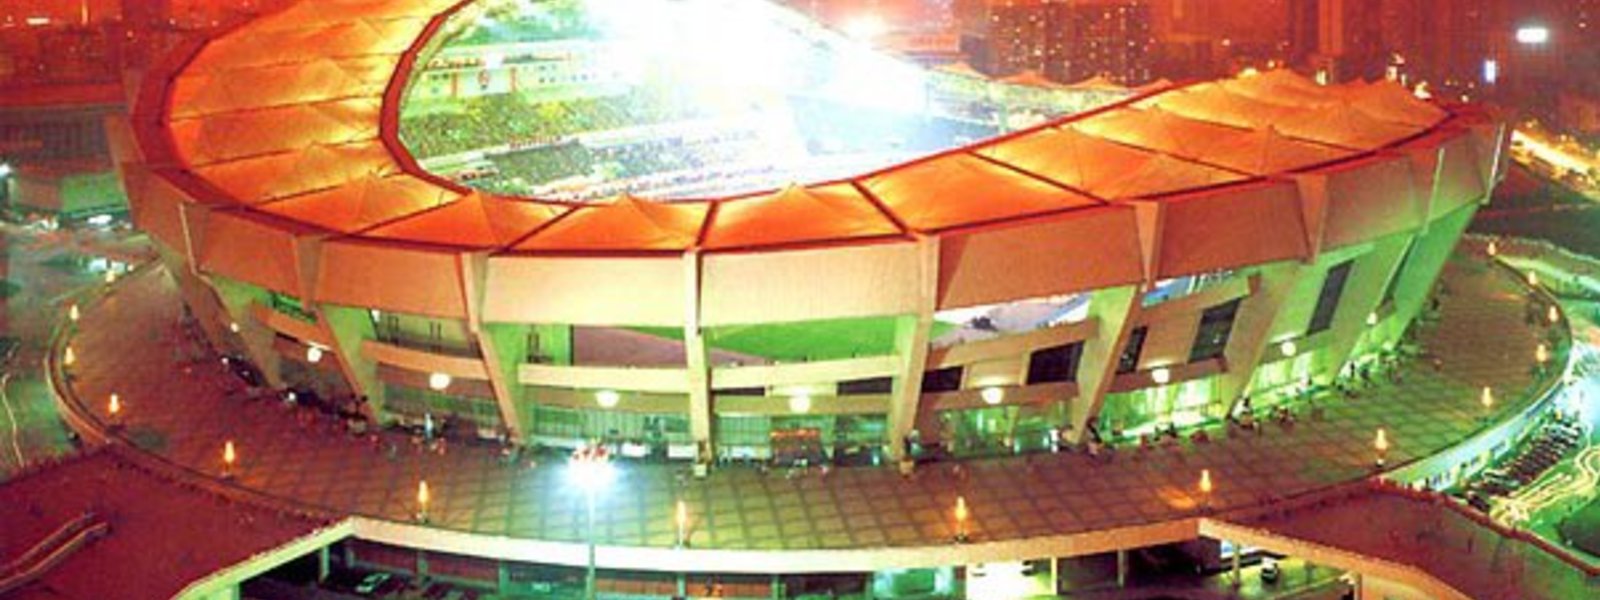 Very big shanhai stadium